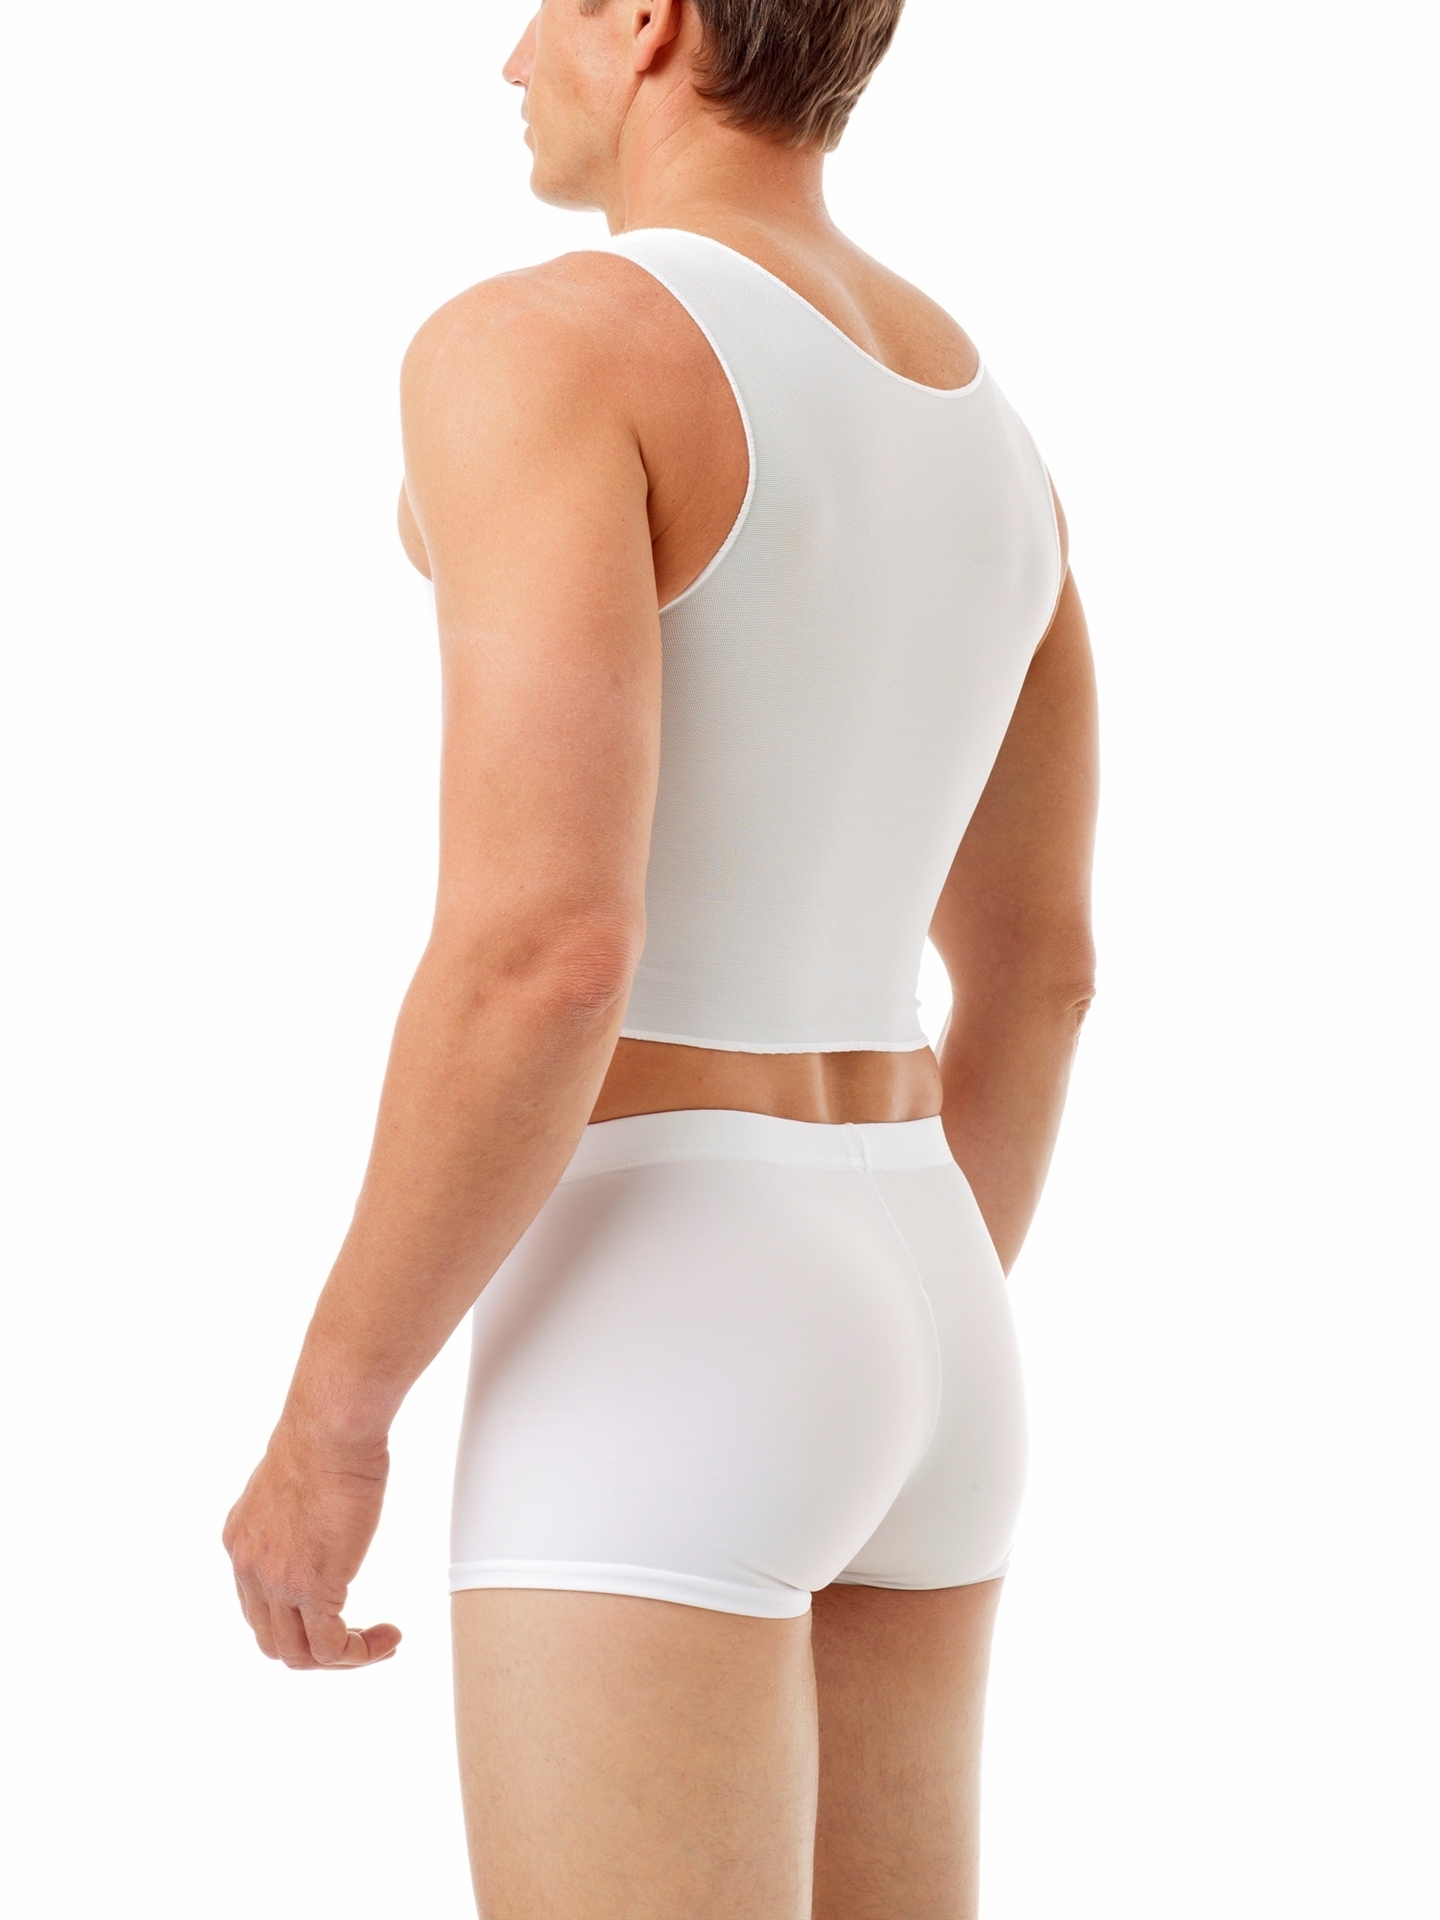 Althee Mesh Underwear Postpartum 10 Pack Disposable Mesh Panties Hospital  Postpartum Underwear S-2xl